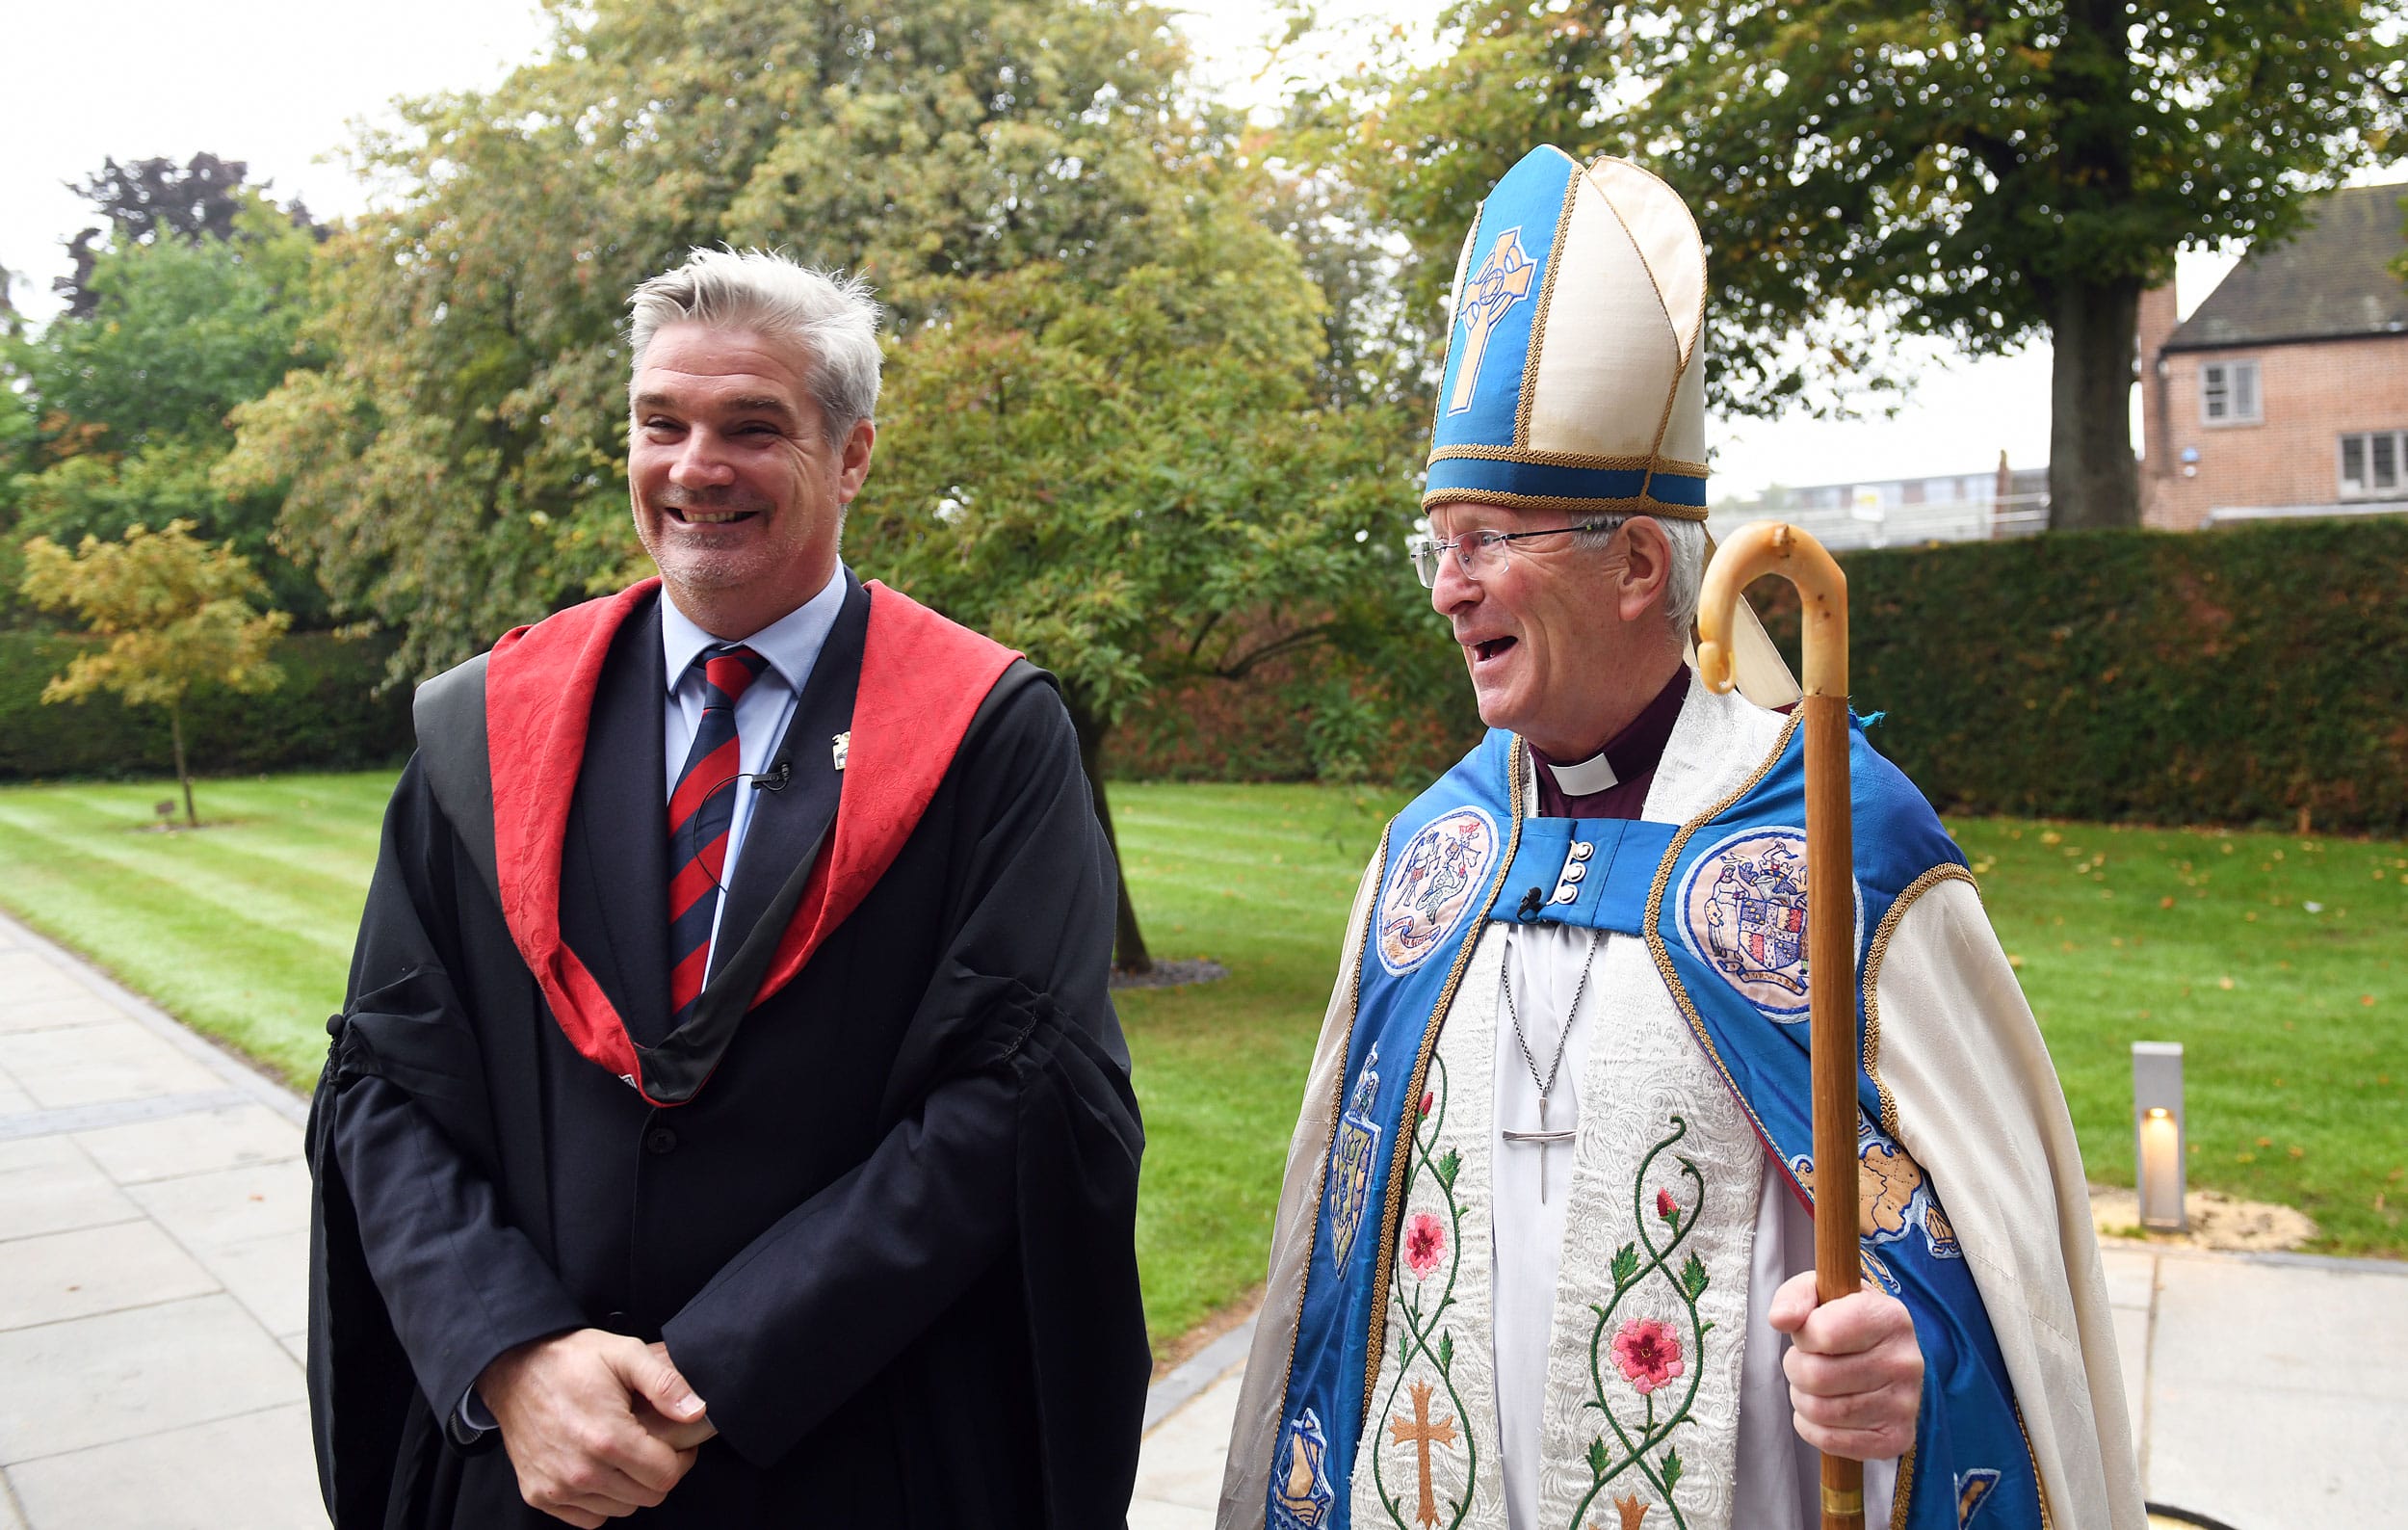 Headmaster of The Blue Coat School, Mr Noel Neeson, welcomes the Bishop of Birmingham.